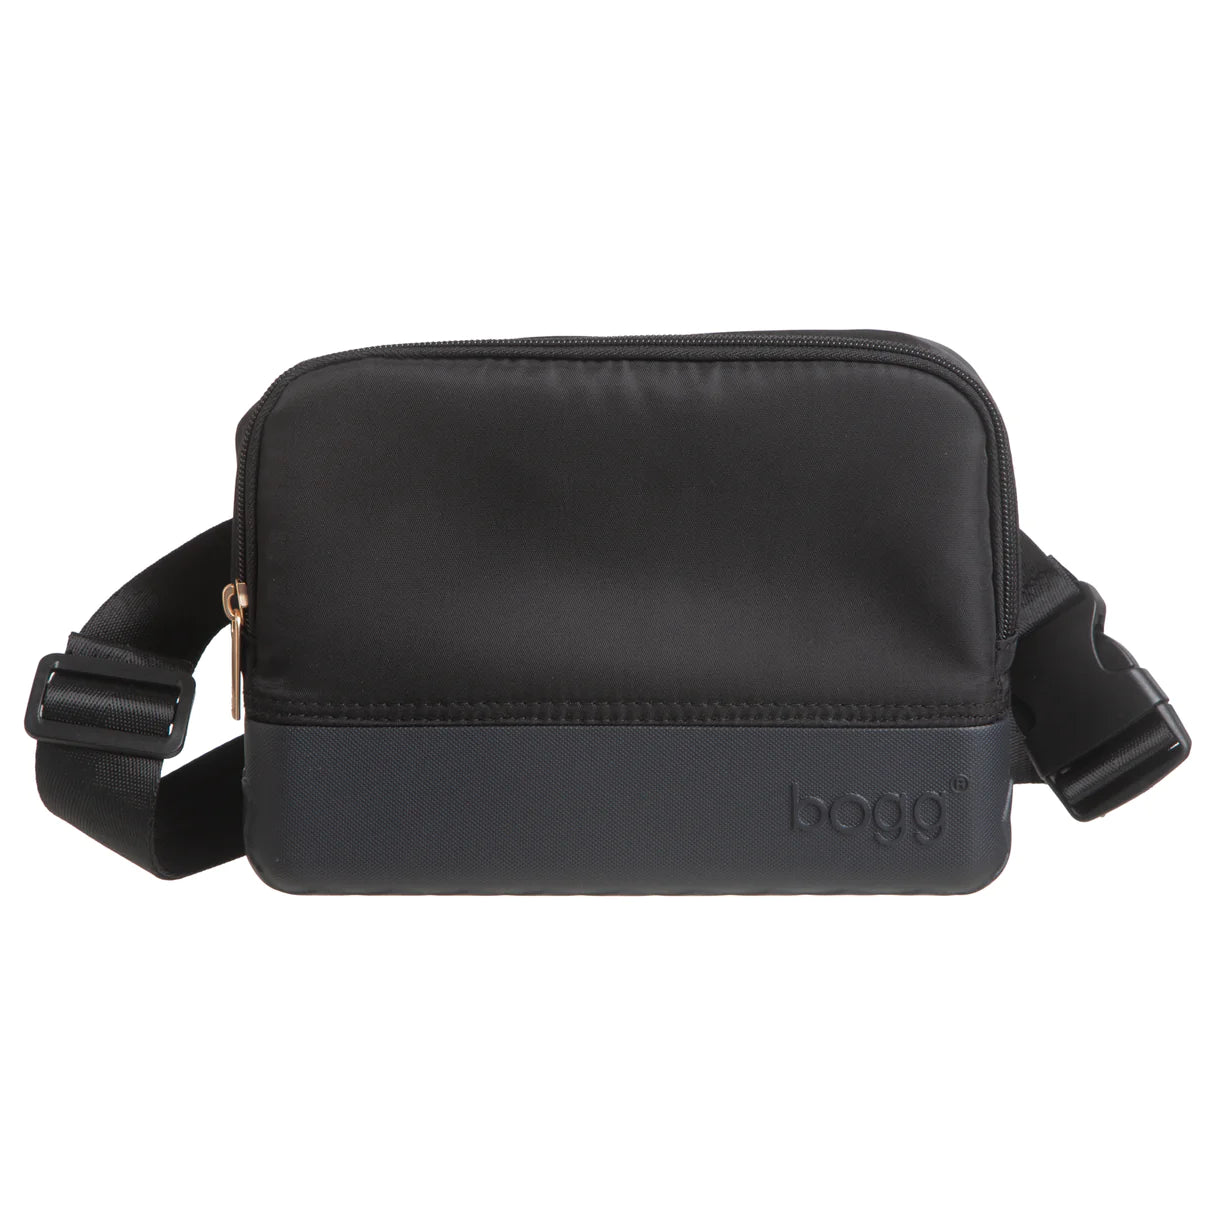 Bogg® Belt Bag - Black